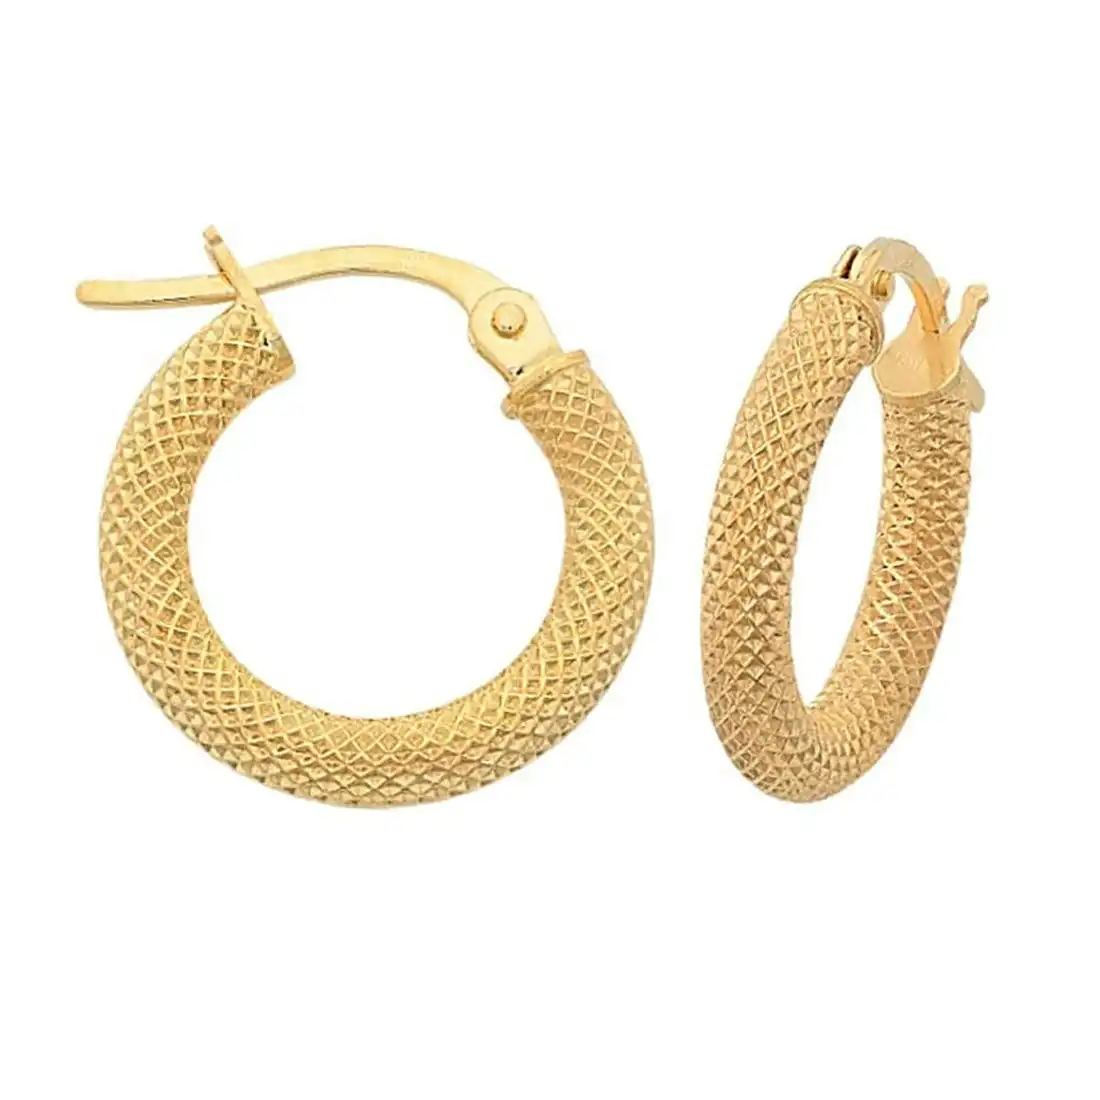 Fancy Mesh Style 15mm Hoop Earrings in 9ct Yellow Gold